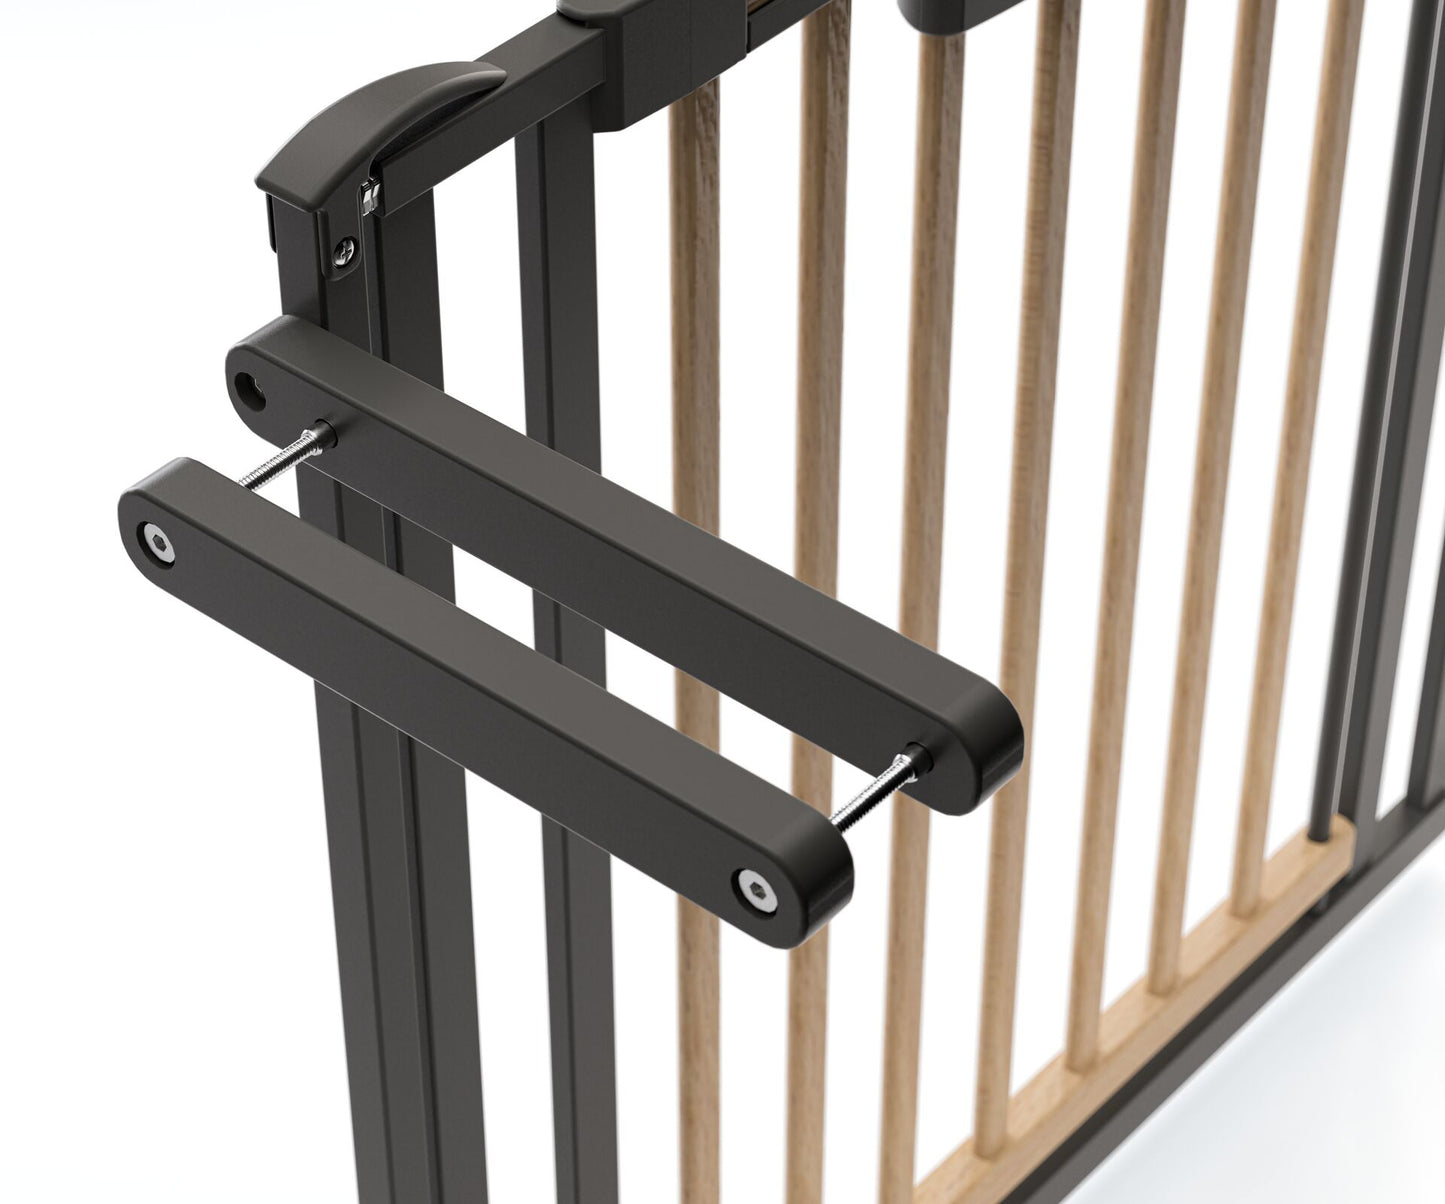 Pressure-fit Stair Safety Gate Easylock Plus for openings 84.5-92.5cm in wood/metal